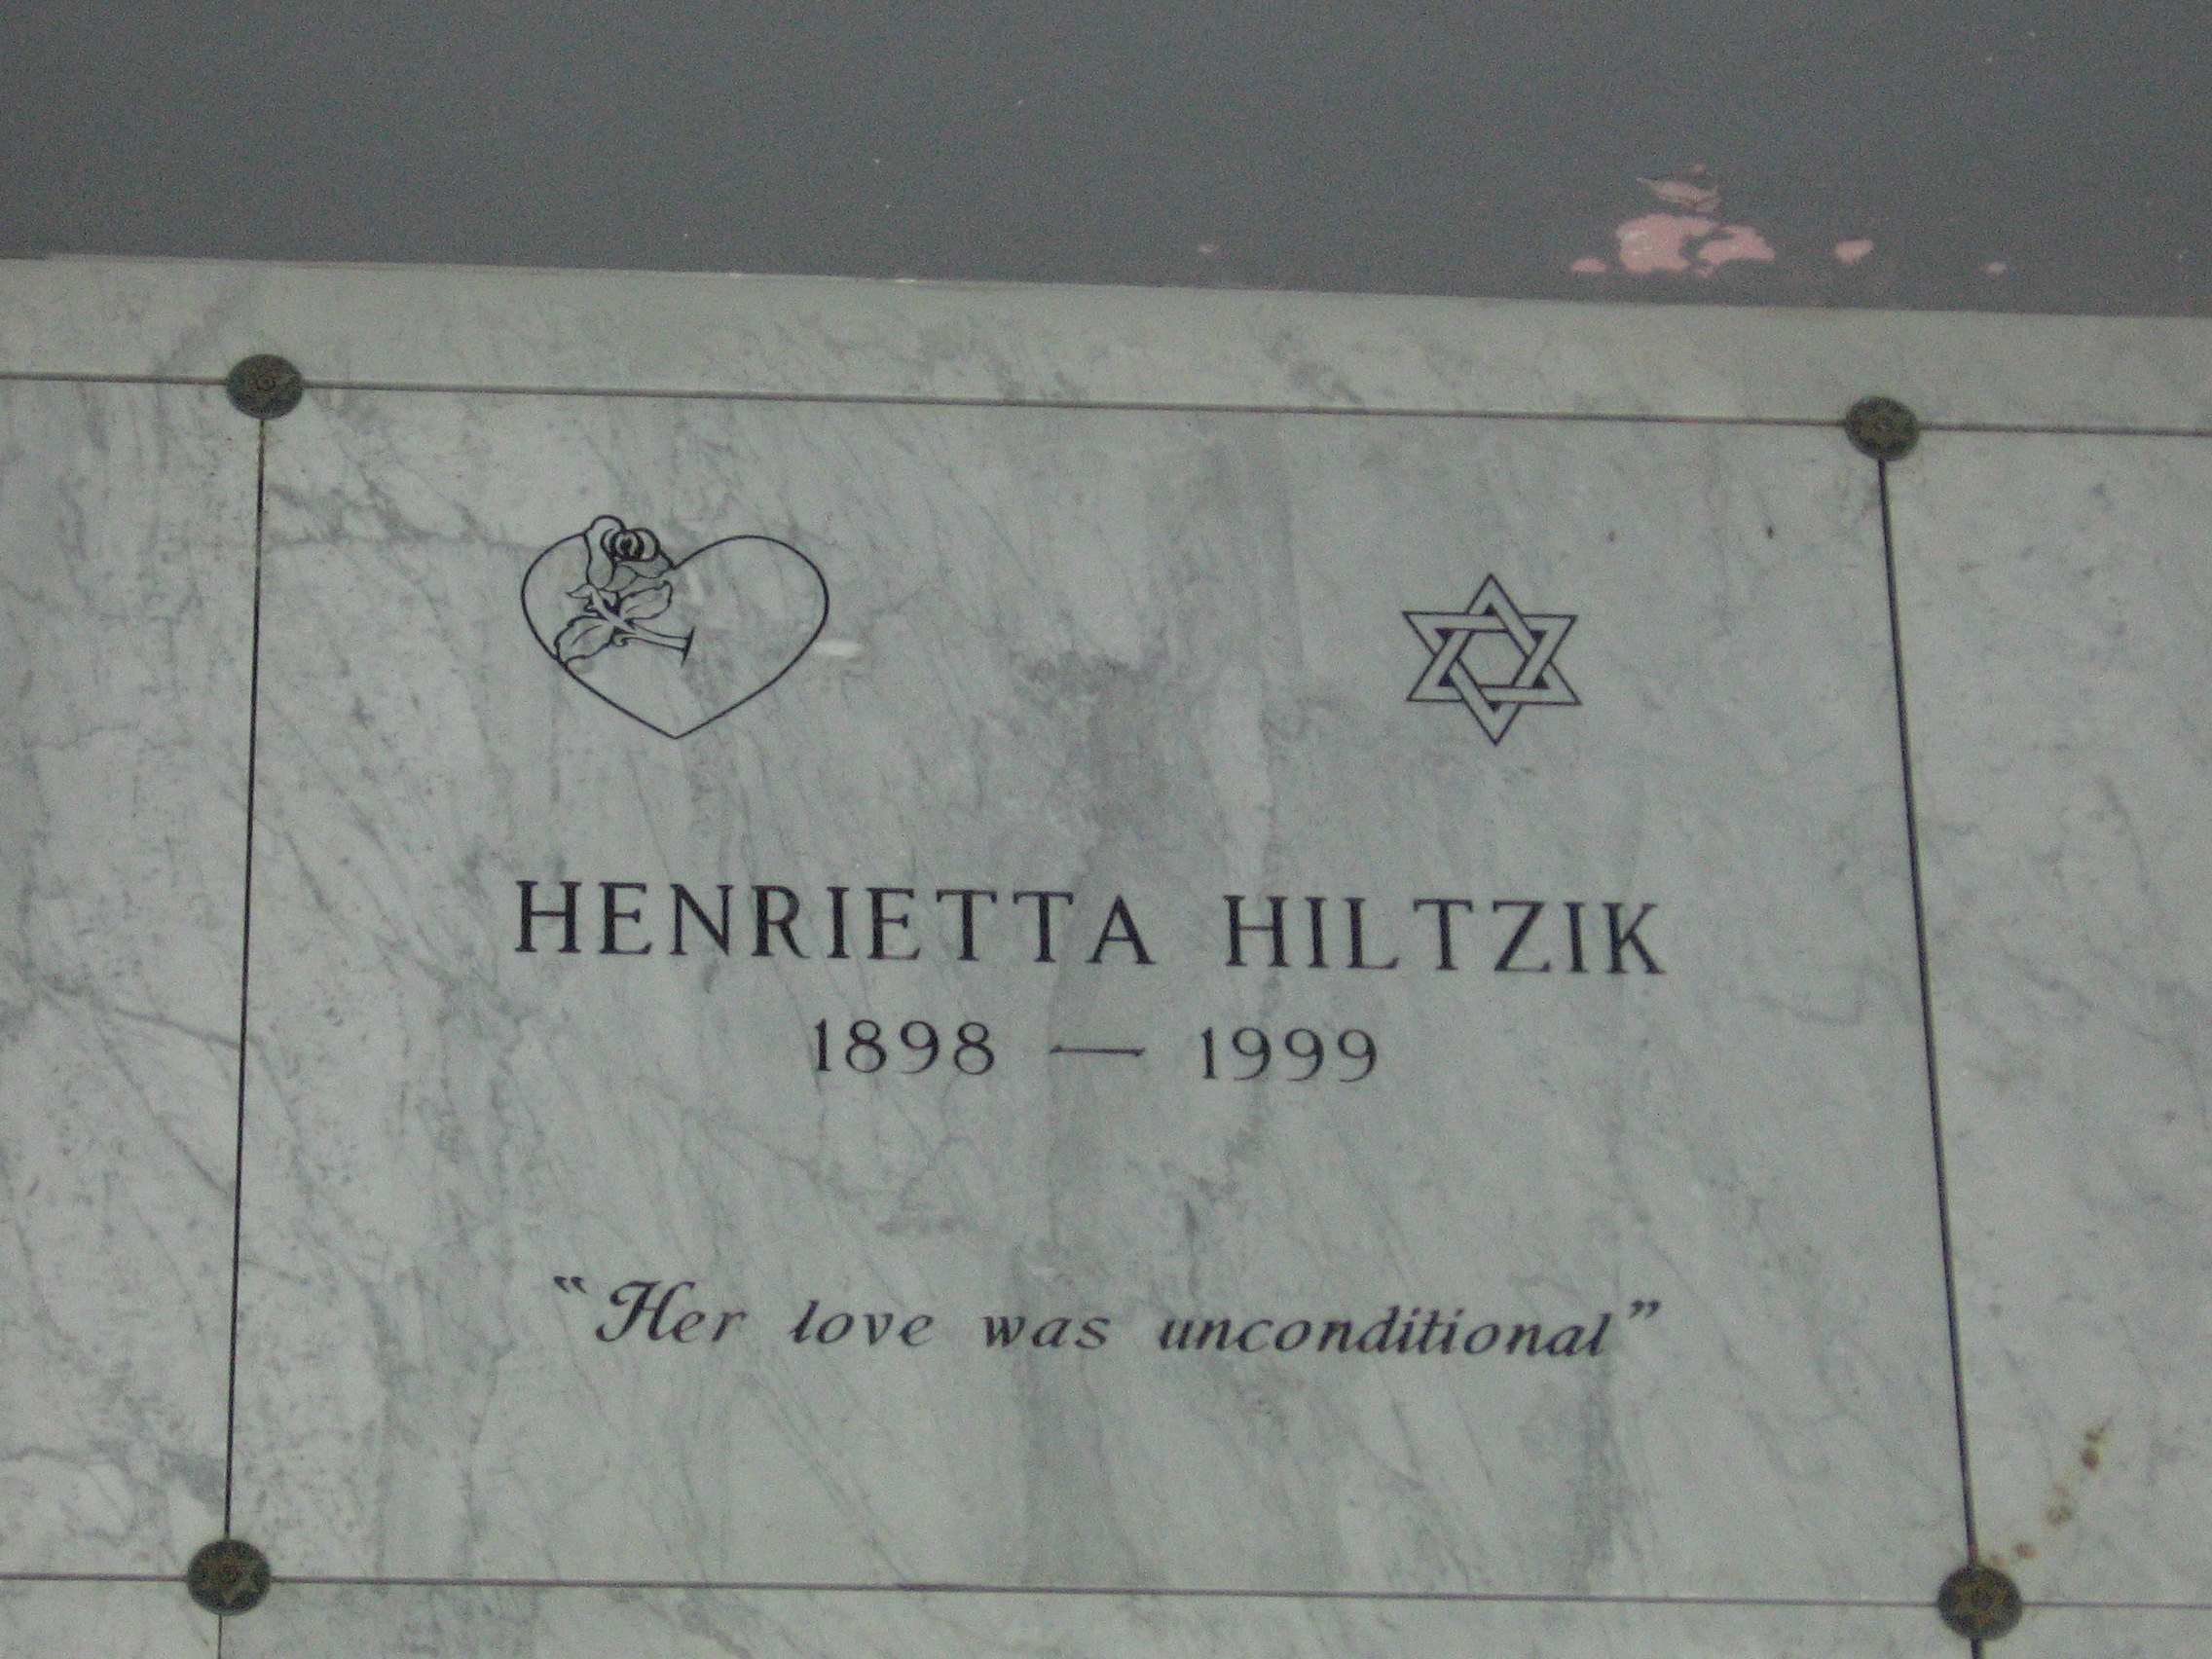 Henrietta Hiltzik